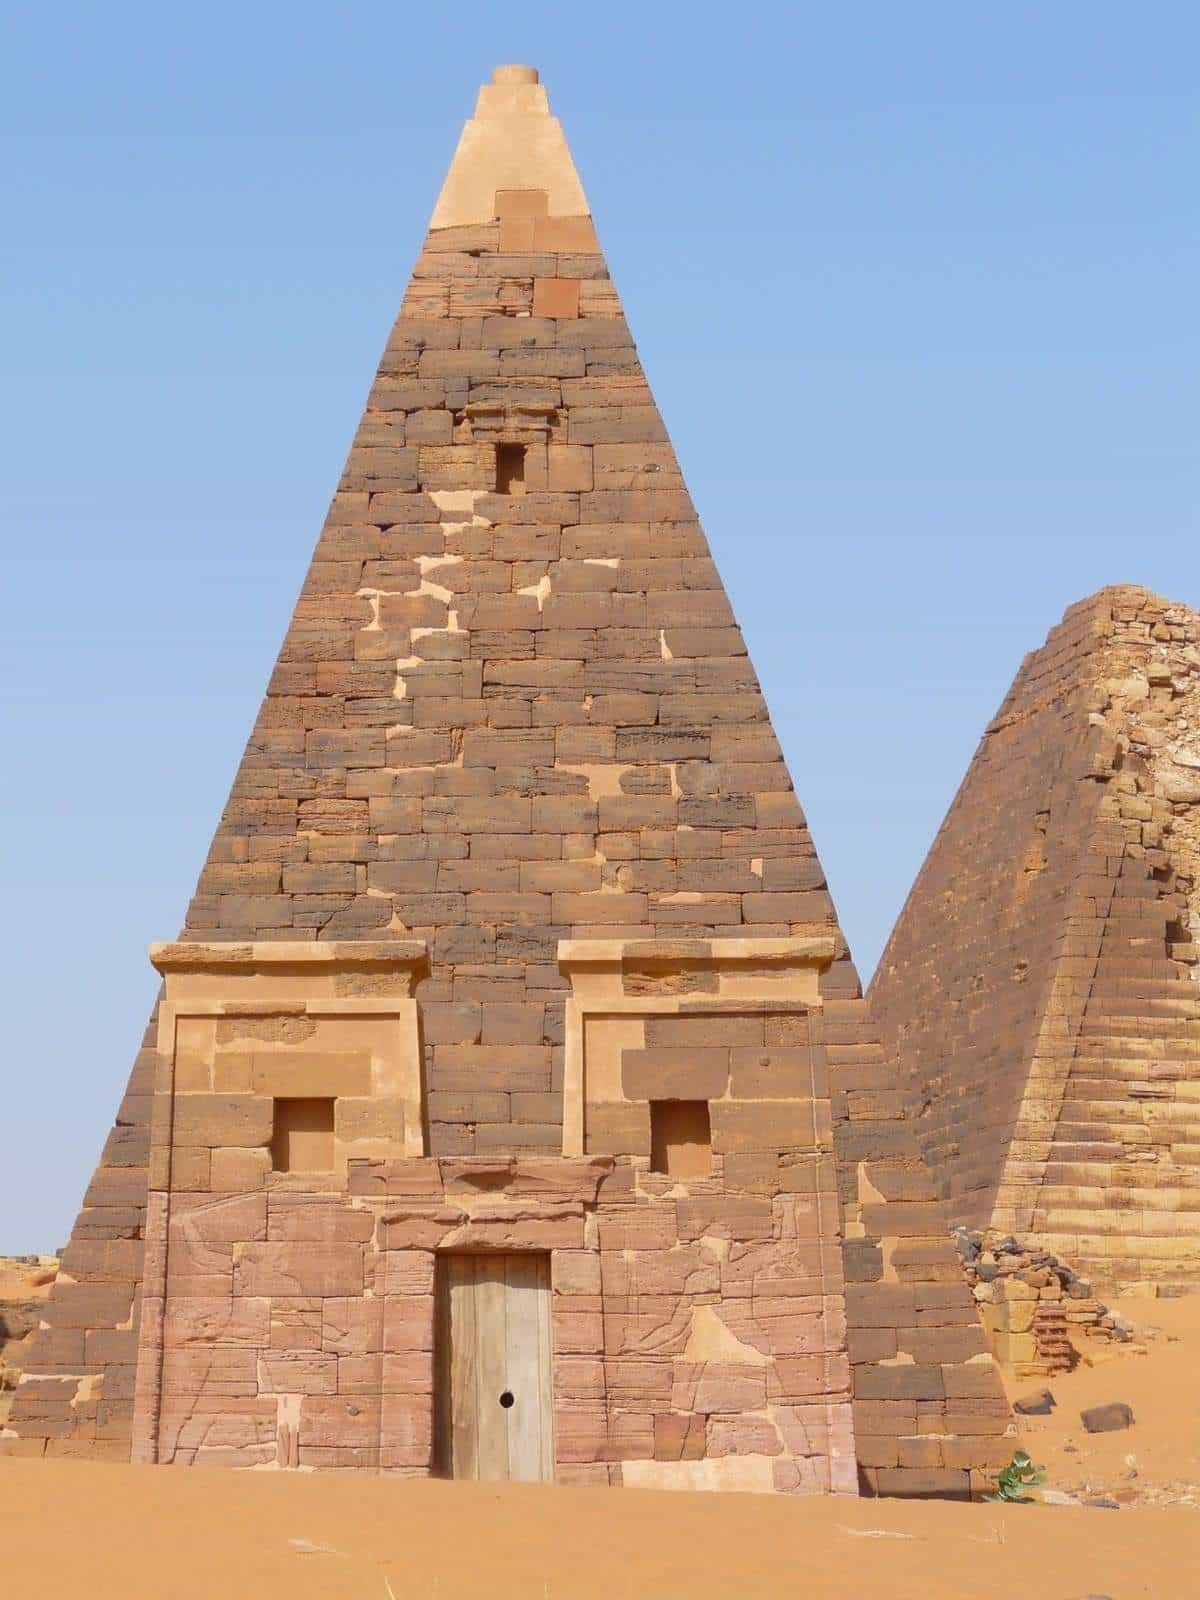 Виды пирамид архитектурные. Пирамиды Нубии в Египте. Нубия в древнем Египте. Пирамиды Мероэ. Архитектура Египта пирамиды.